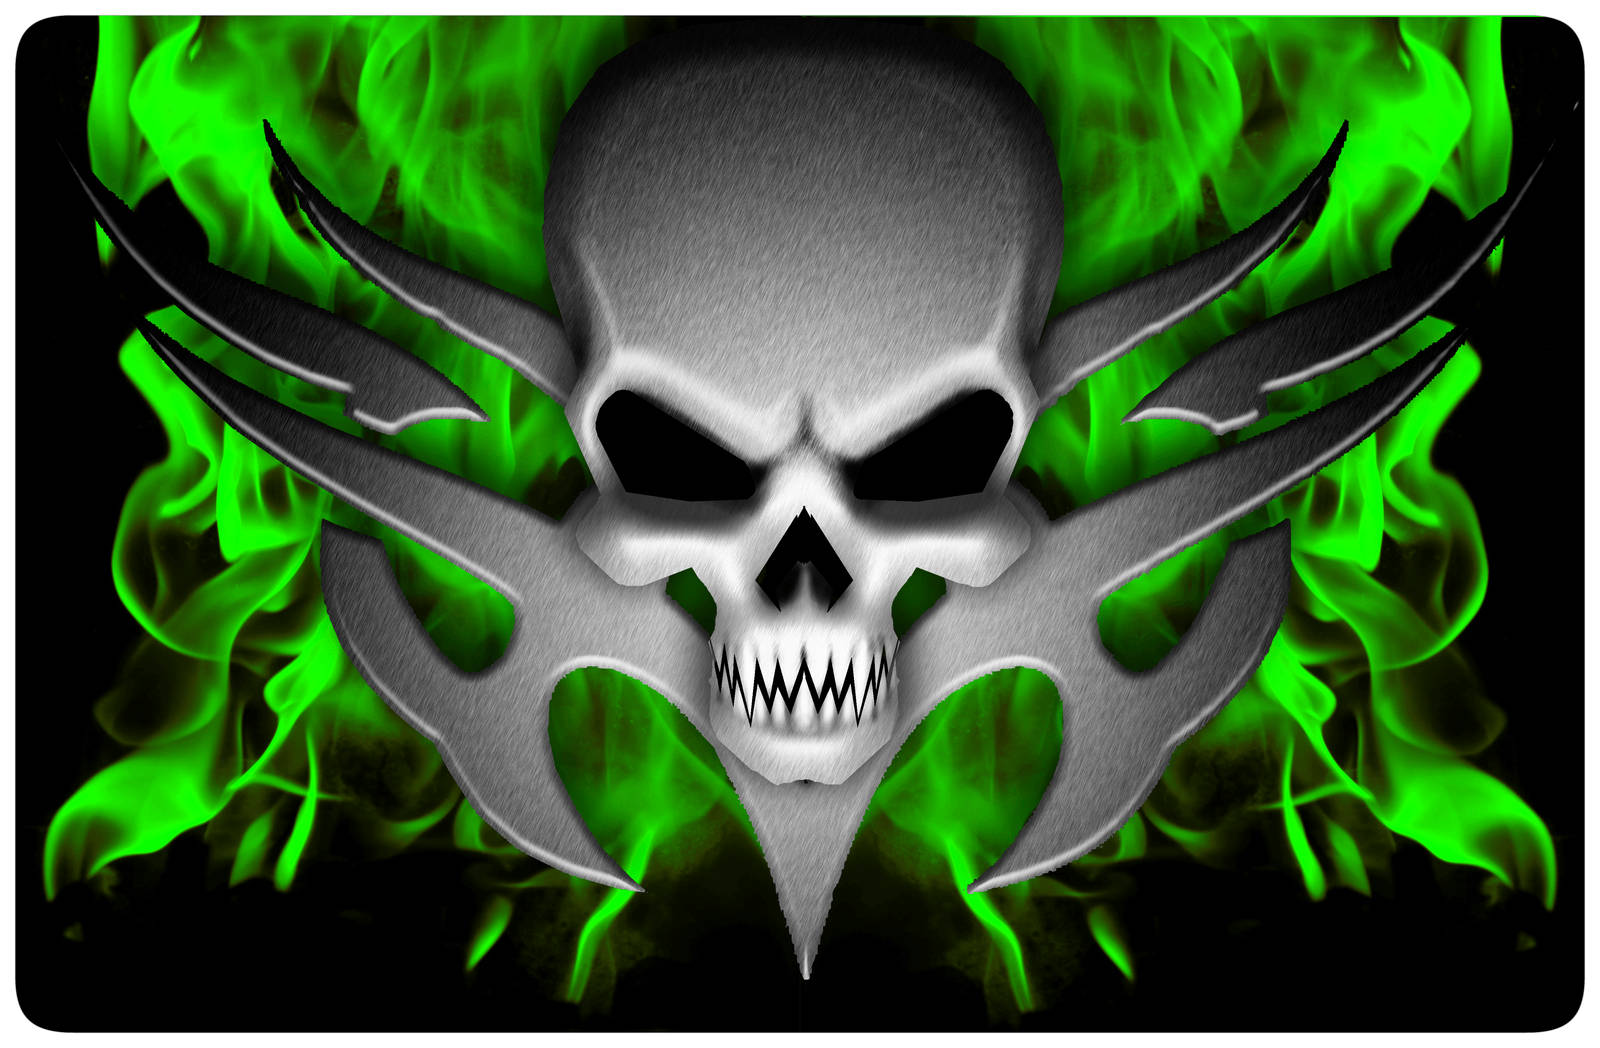 "A skull ablaze with intense green fire" Wallpaper